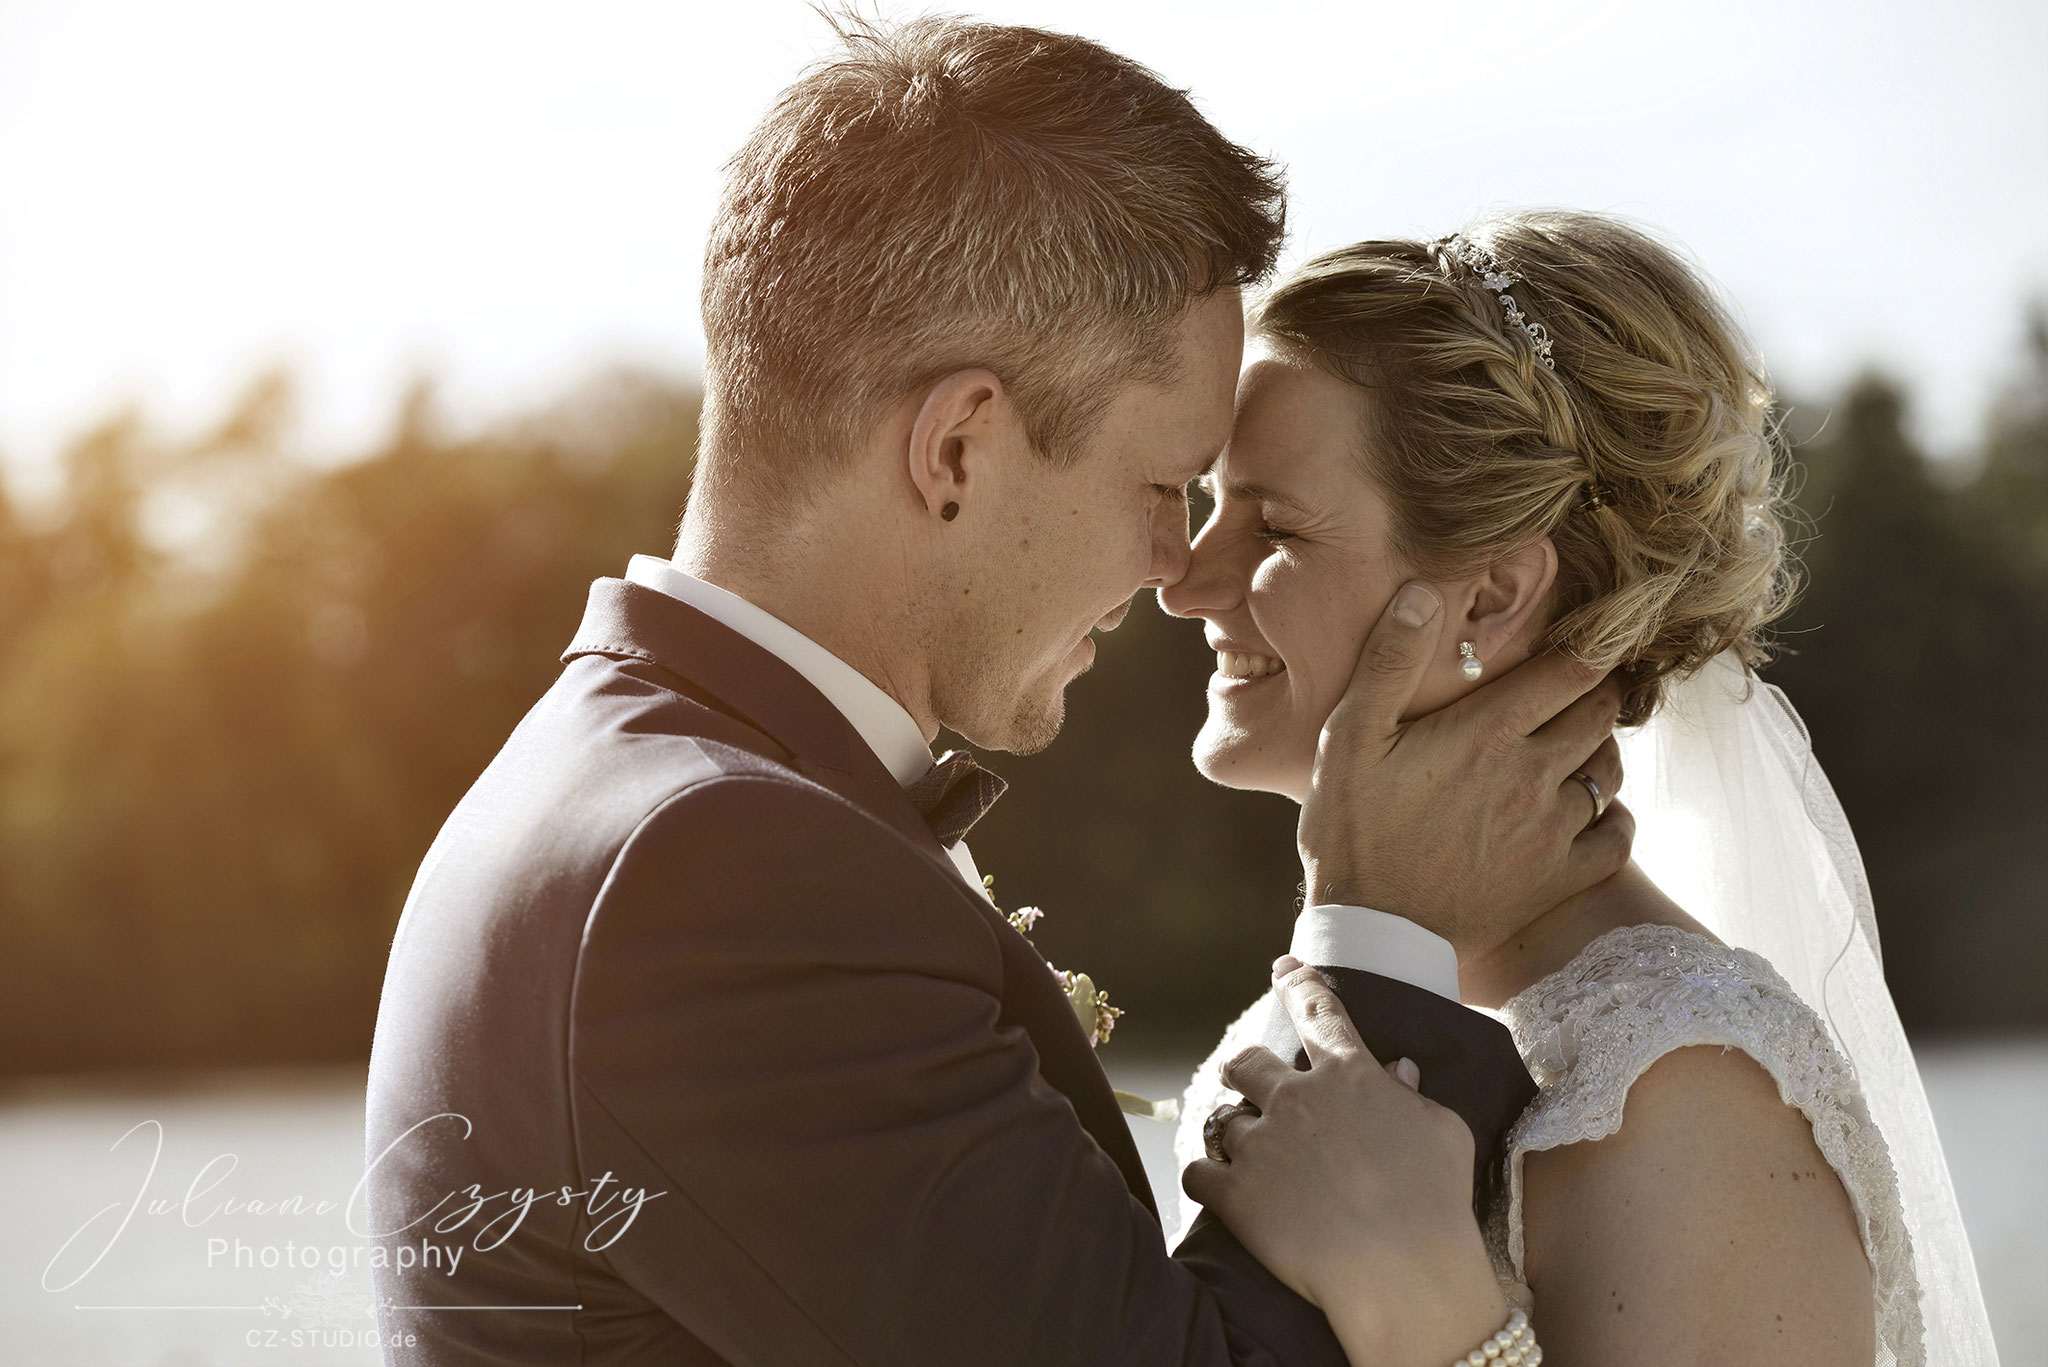 Liebevolle Hochzeitsfotografie- Juliane Czysty, Fotostudio im Landkreis ROW